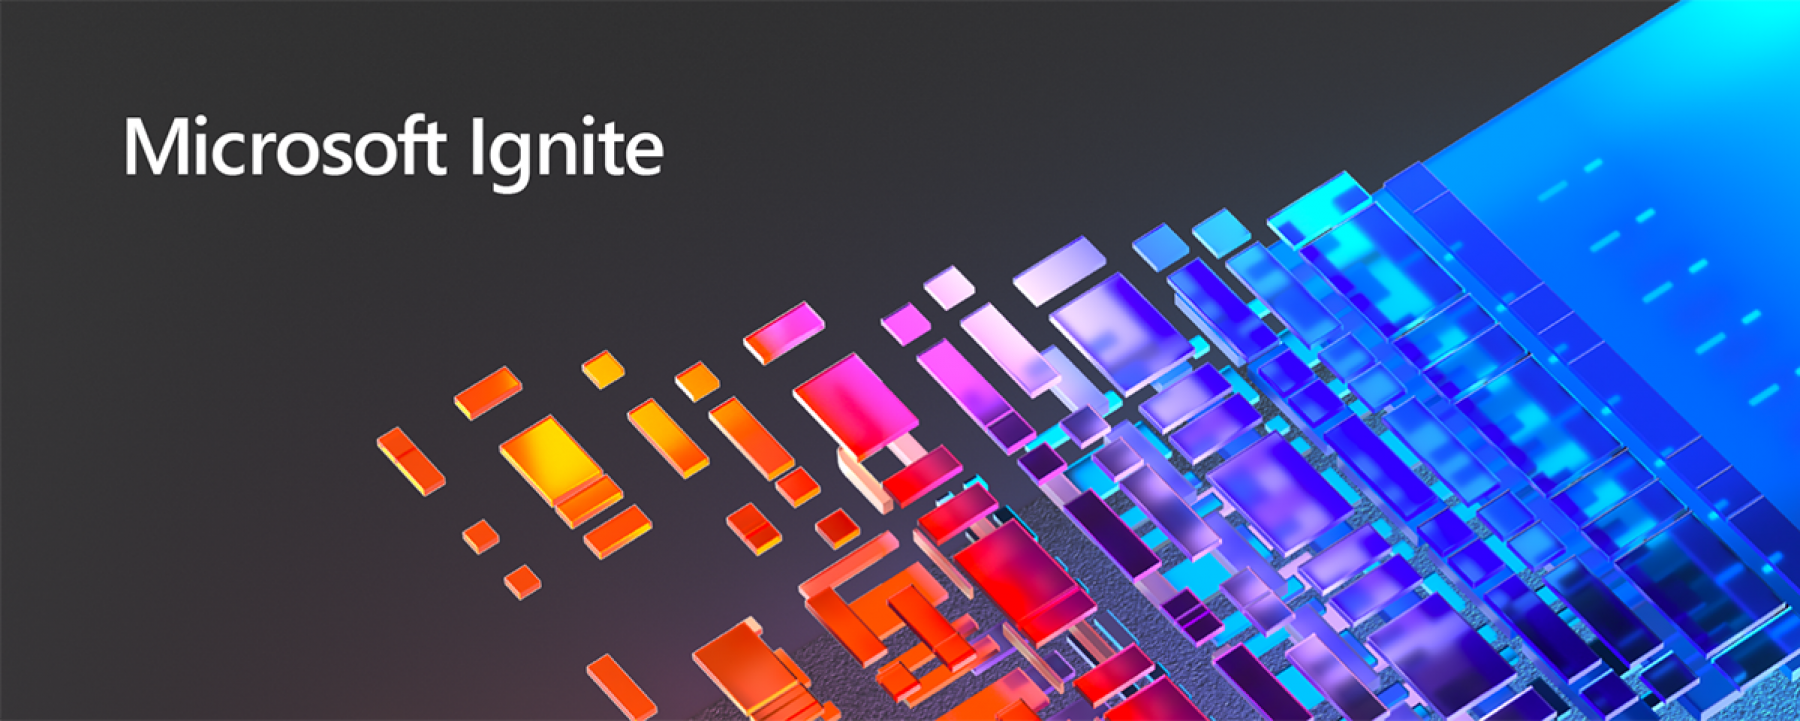 Microsoft Ignite, un événement organisé du 2 au 4 mars 2021